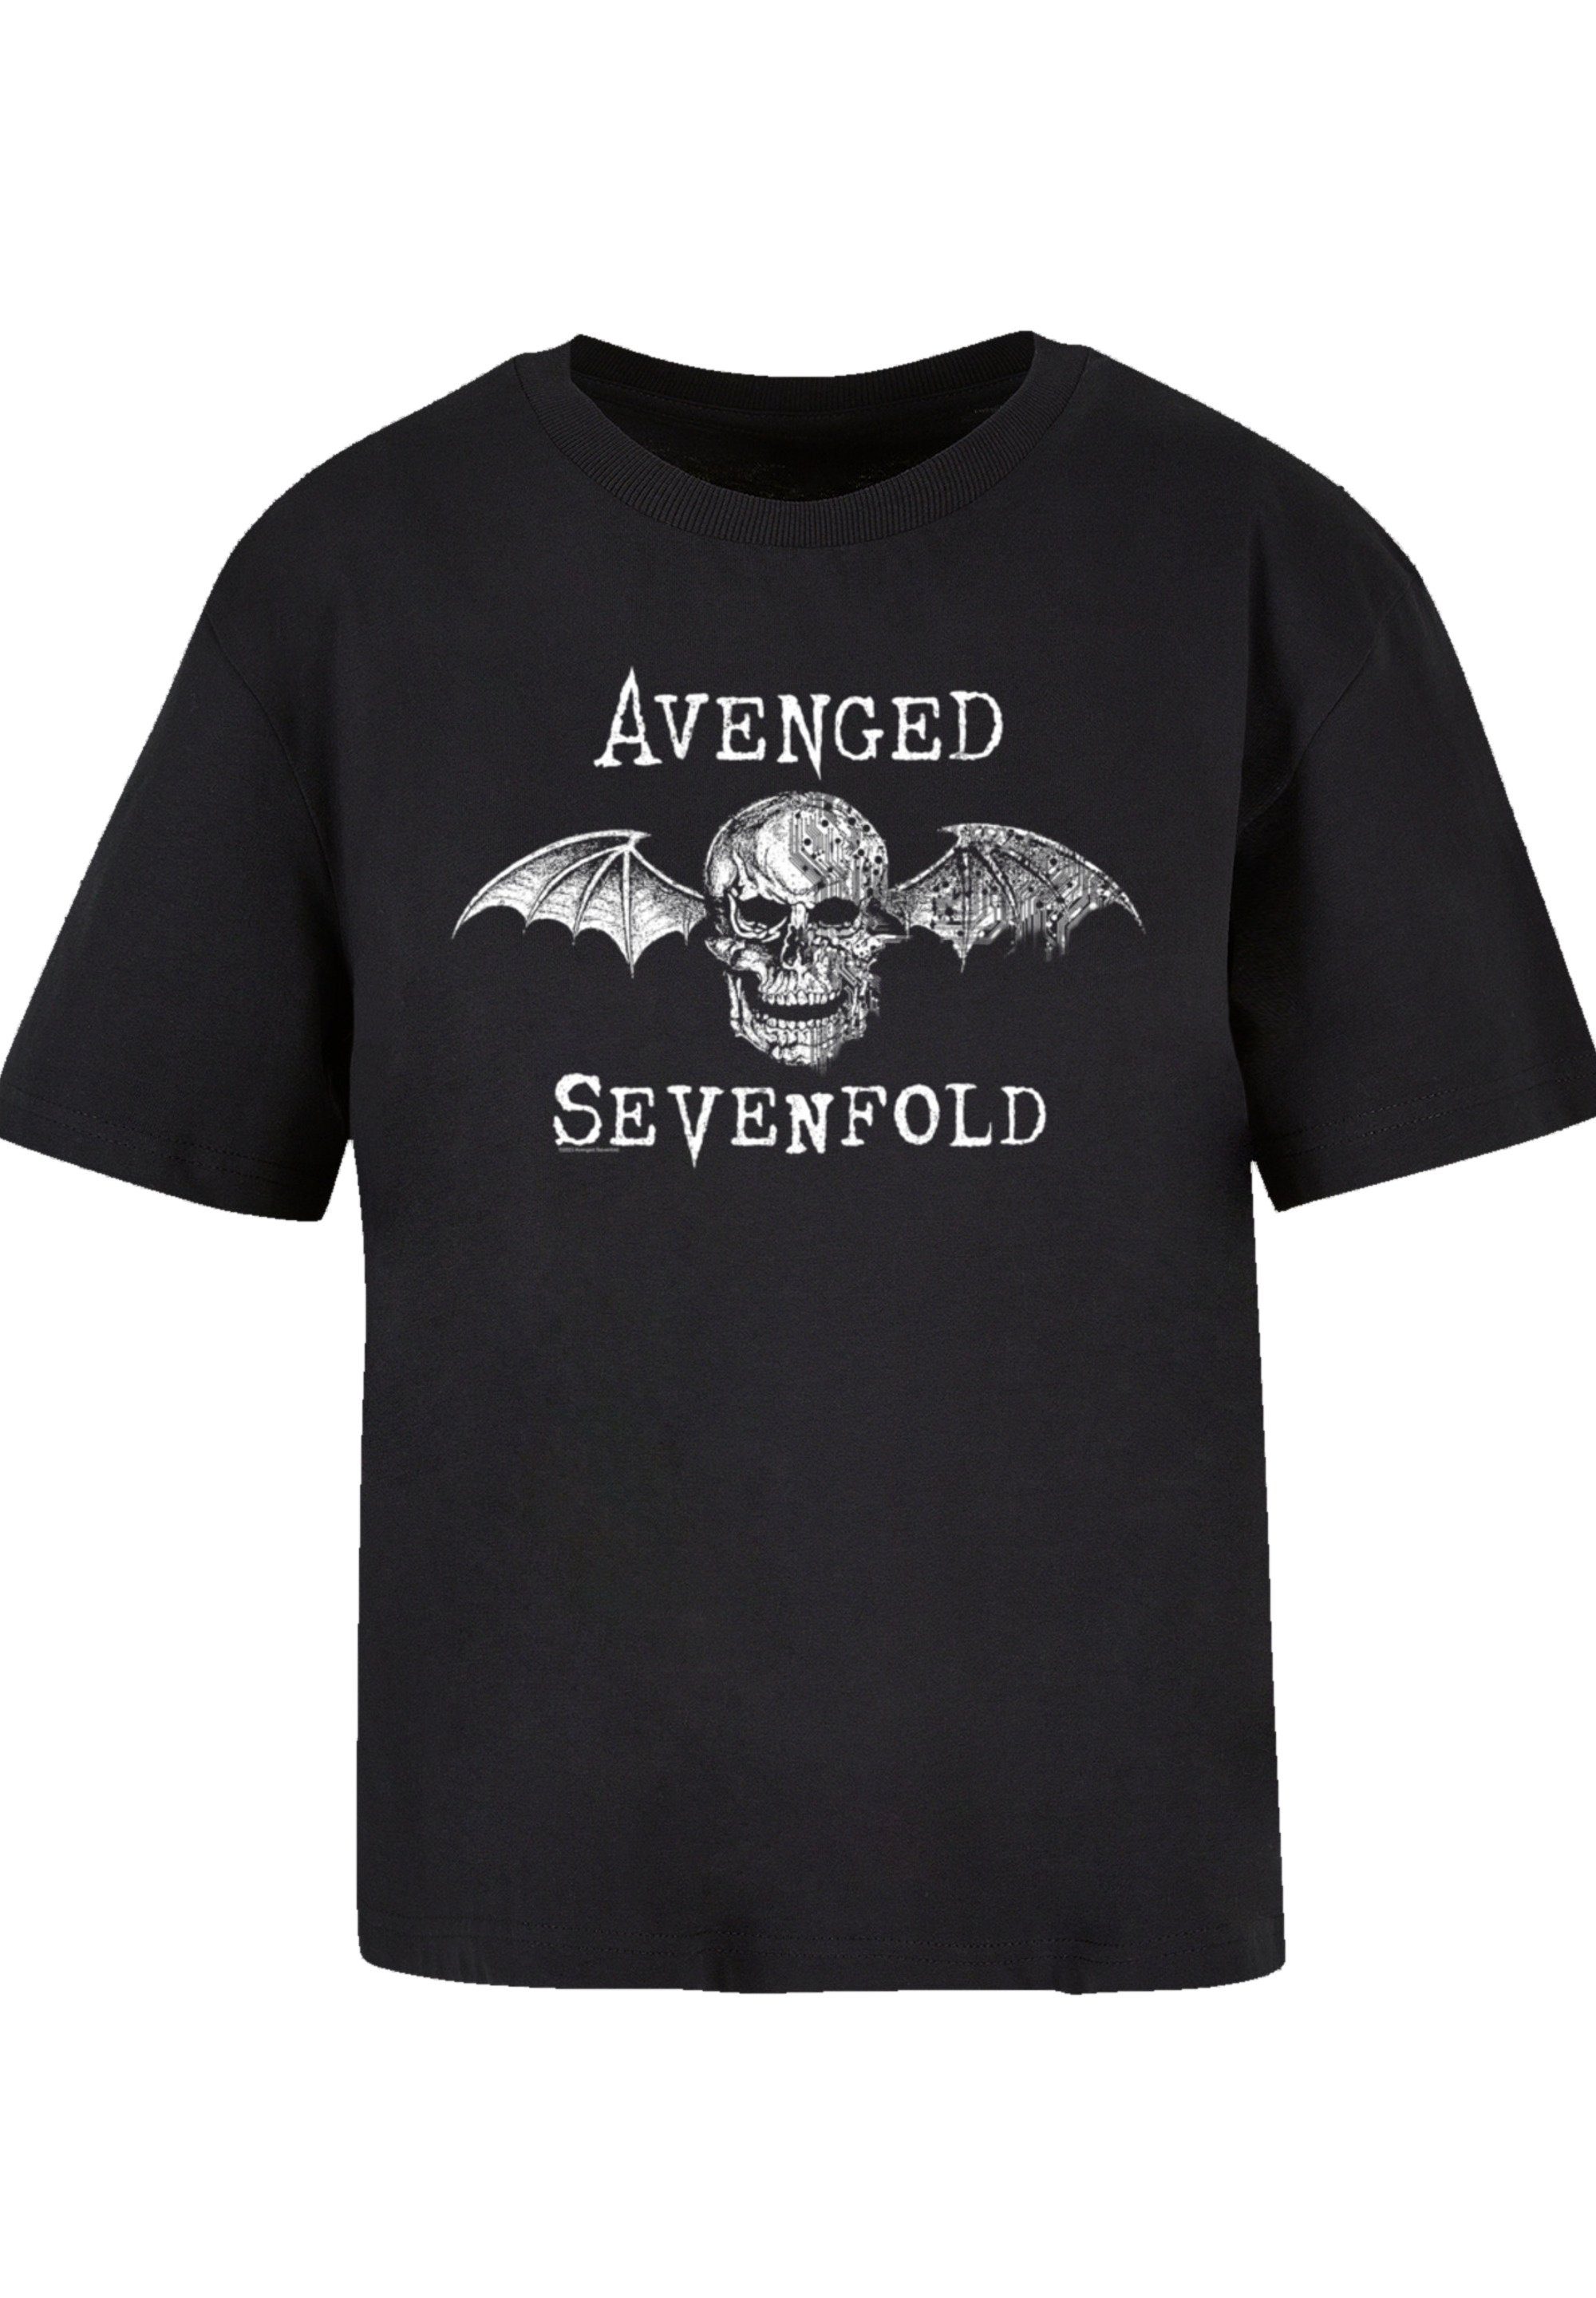 F4NT4STIC Sevenfold T-Shirt Premium Band, lizenziertes Avenged T-Shirt Avenged Metal Offiziell Band Rock Qualität, Sevenfold Cyborg Bat Rock-Musik,